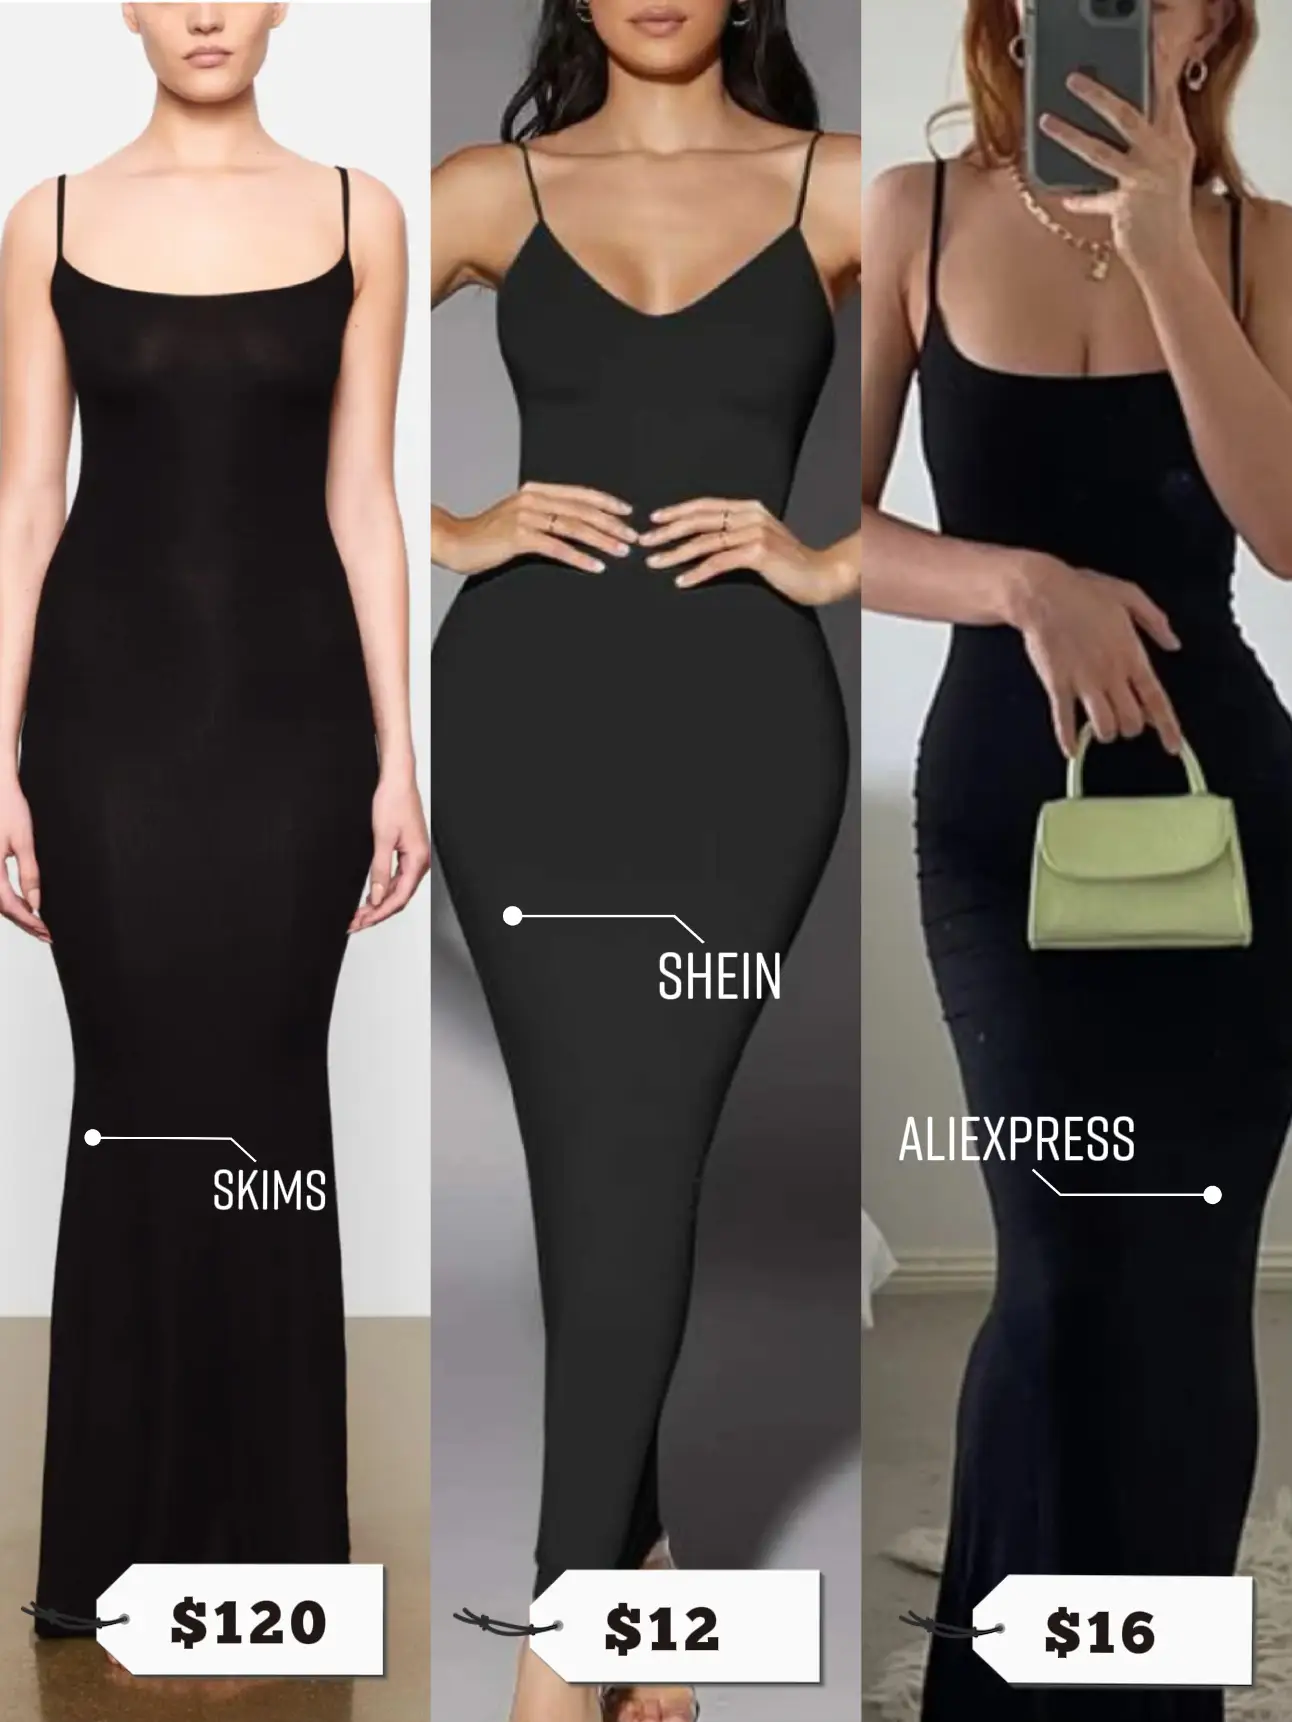 SHEIN - skims dress on Designer Wardrobe